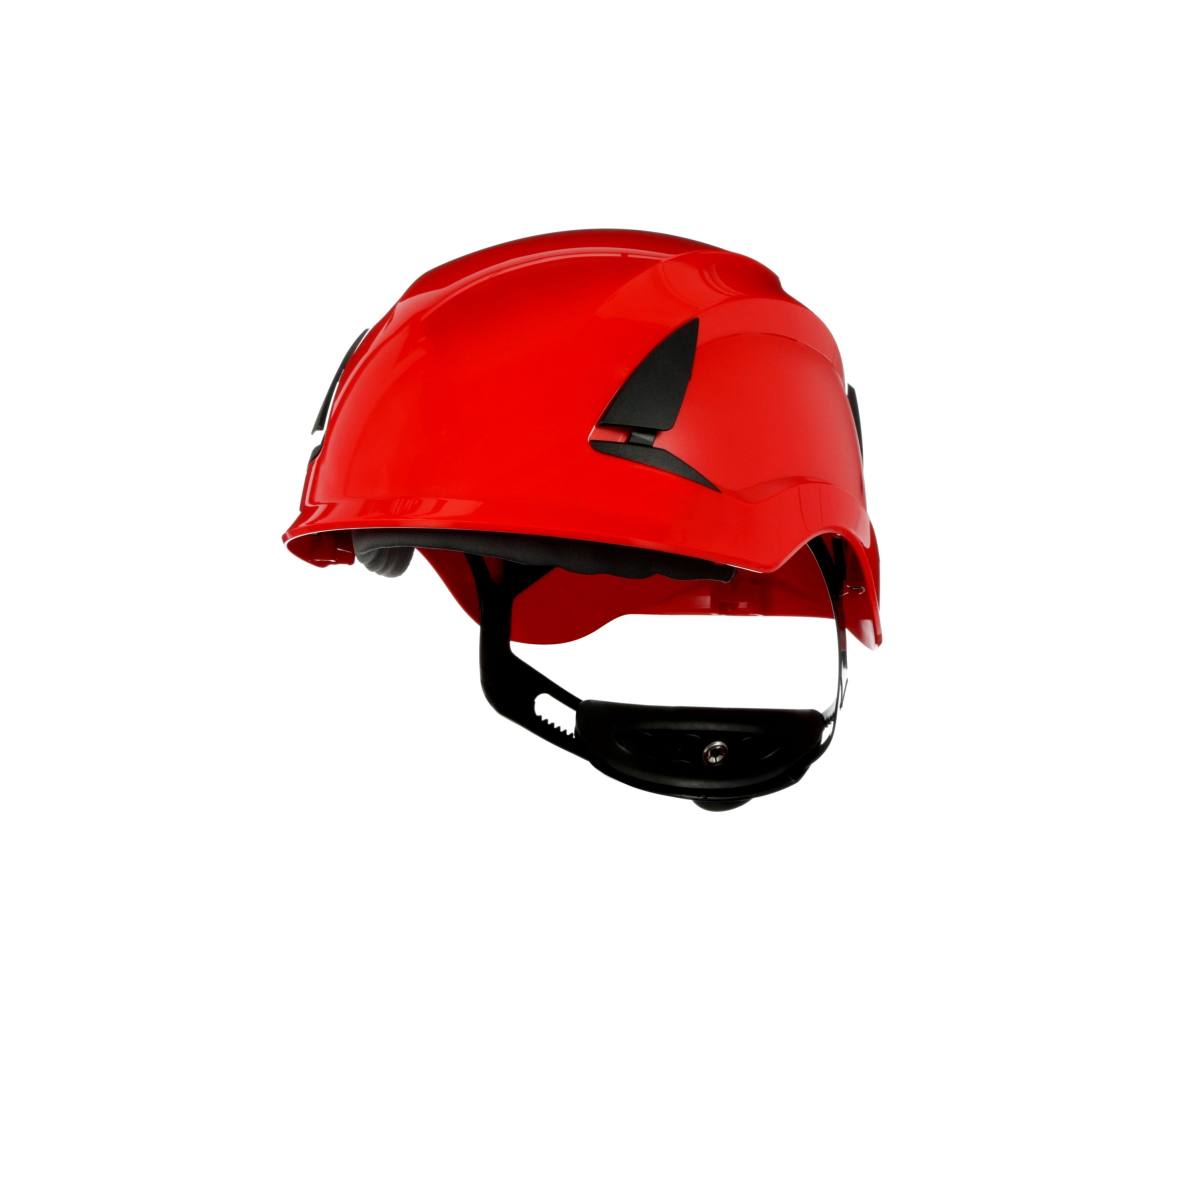 3M SecureFit casque de protection, X5505VE-CE, rouge, non ventilé, CE